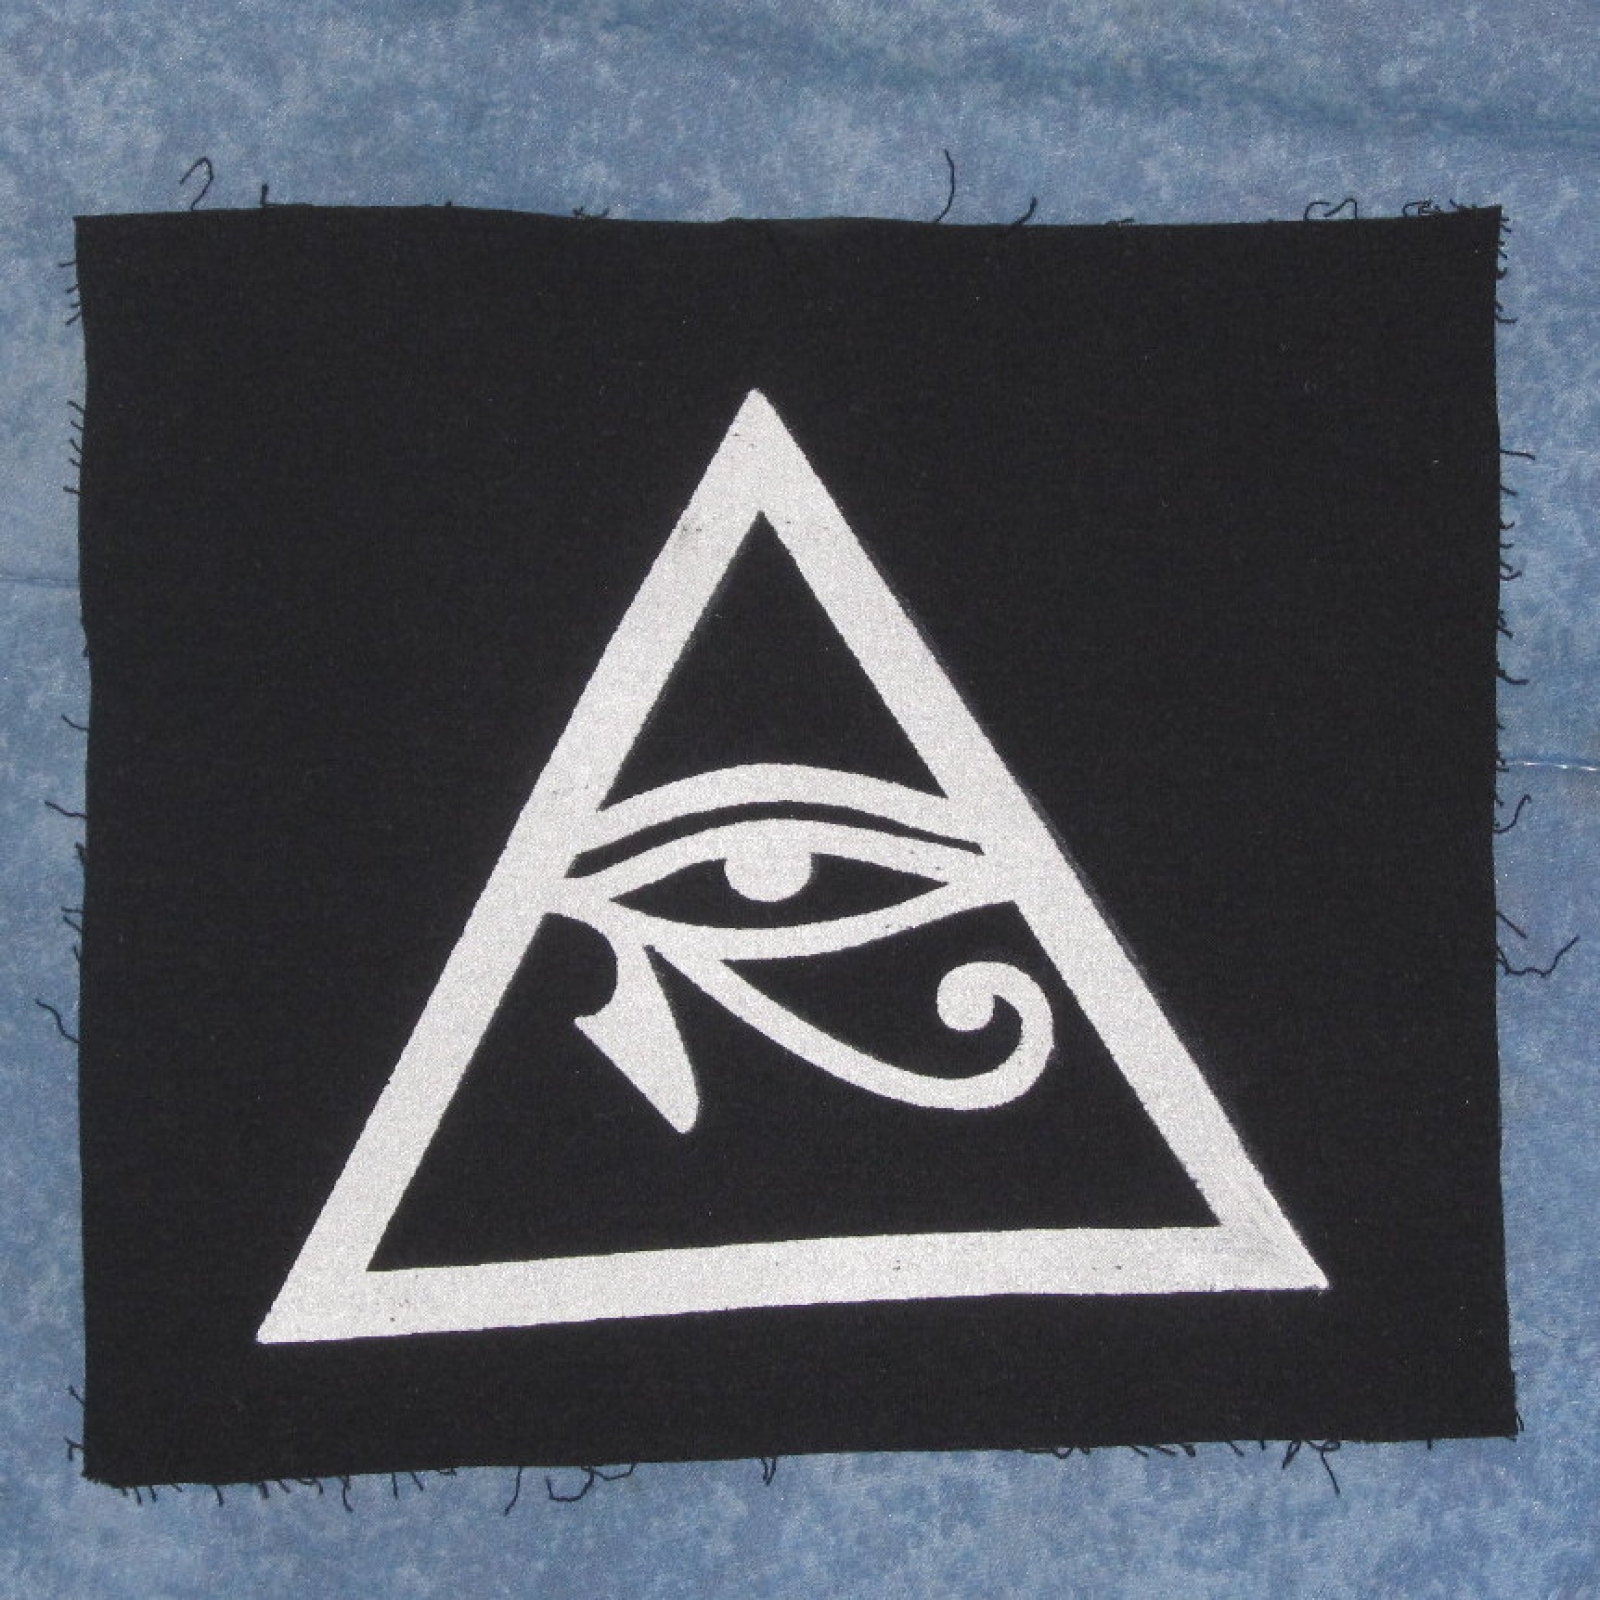 Illuminati Symbol Eye of Horus in Triangle Patch, Large - White On